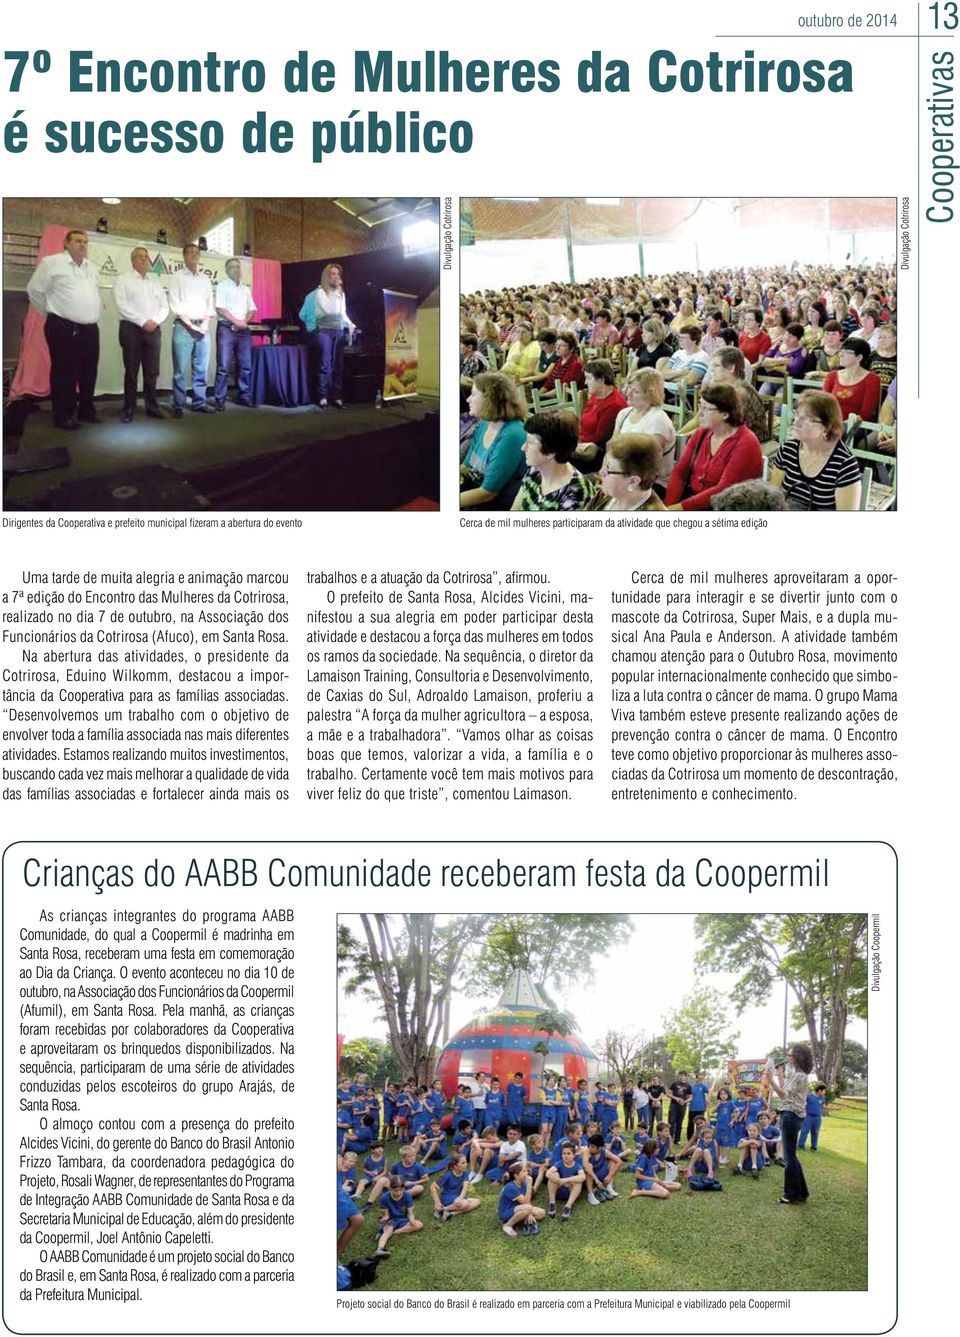 Associação dos Funcionários da Cotrirosa (Afuco), em Santa Rosa.